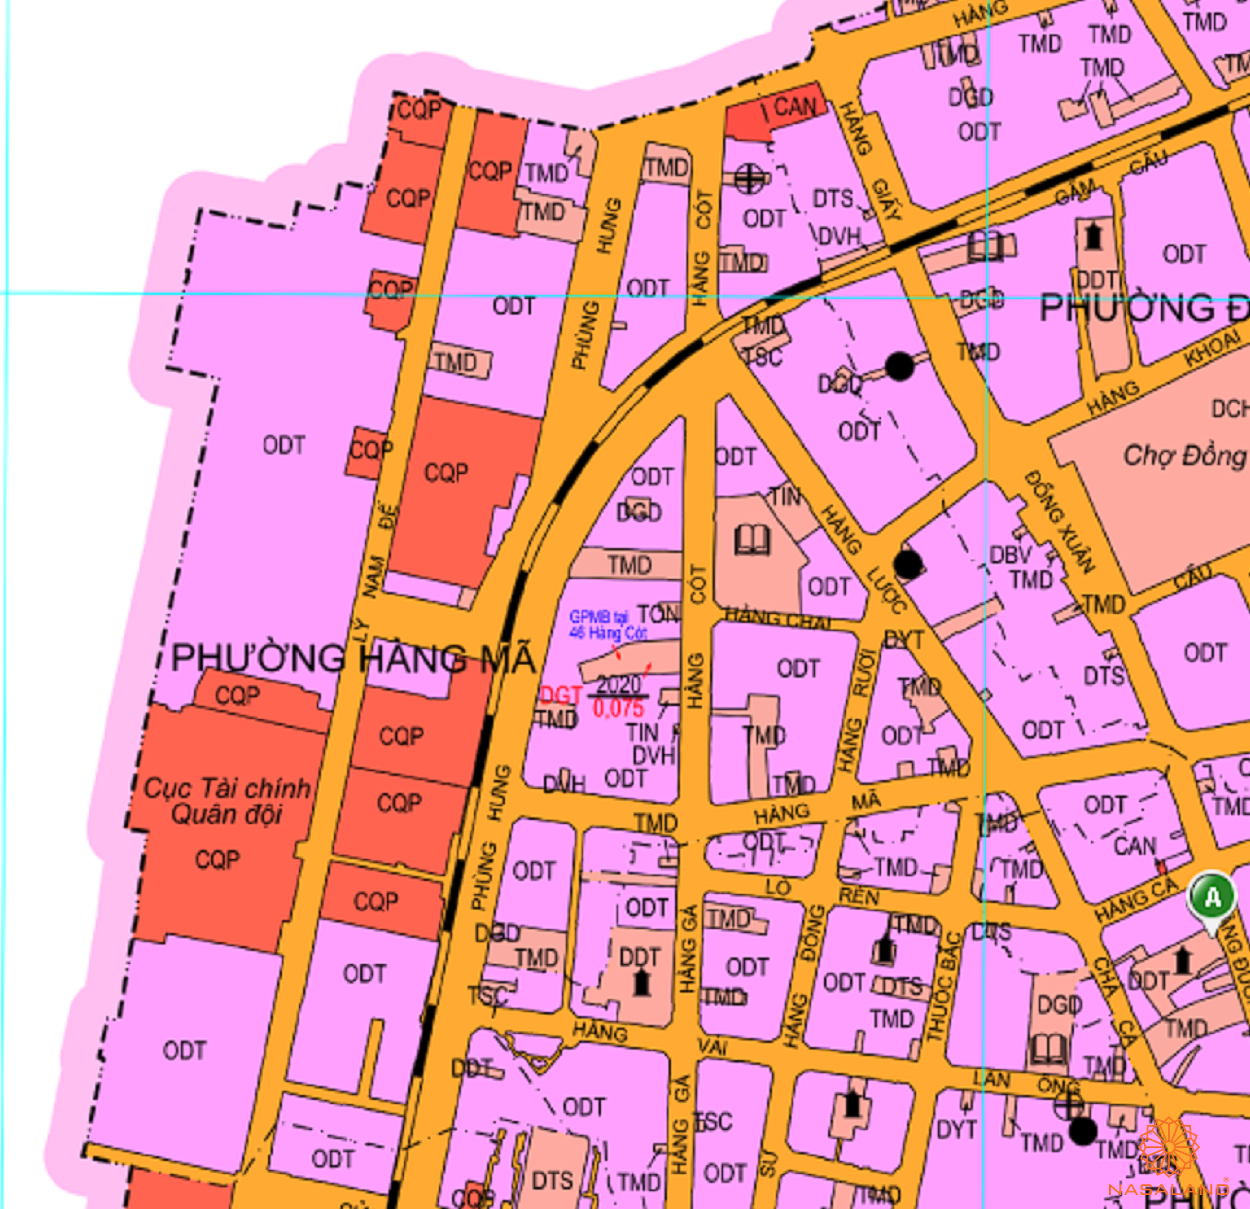 Bản đồ quy hoạch sử dụng đất Phường Hàng Mã theo bản đồ quy hoạch sử dụng đất năm 2020 Quận Hoàn Kiếm, Thành phố Hà Nội.